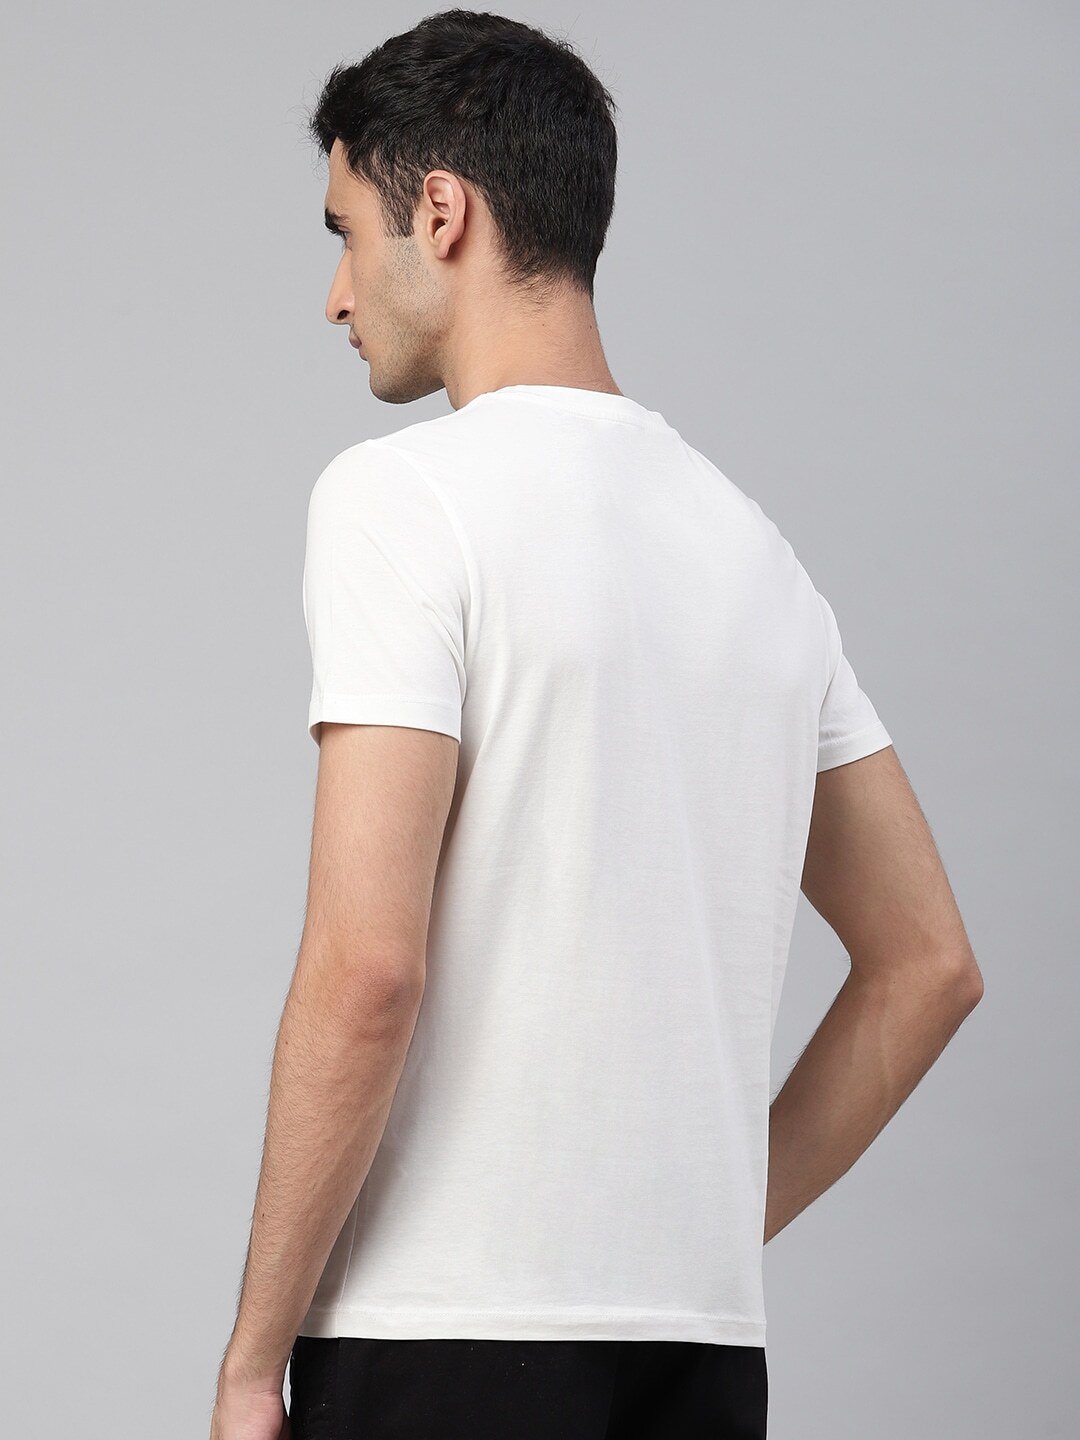 Men White Solid Round Neck T-shirt-2191212